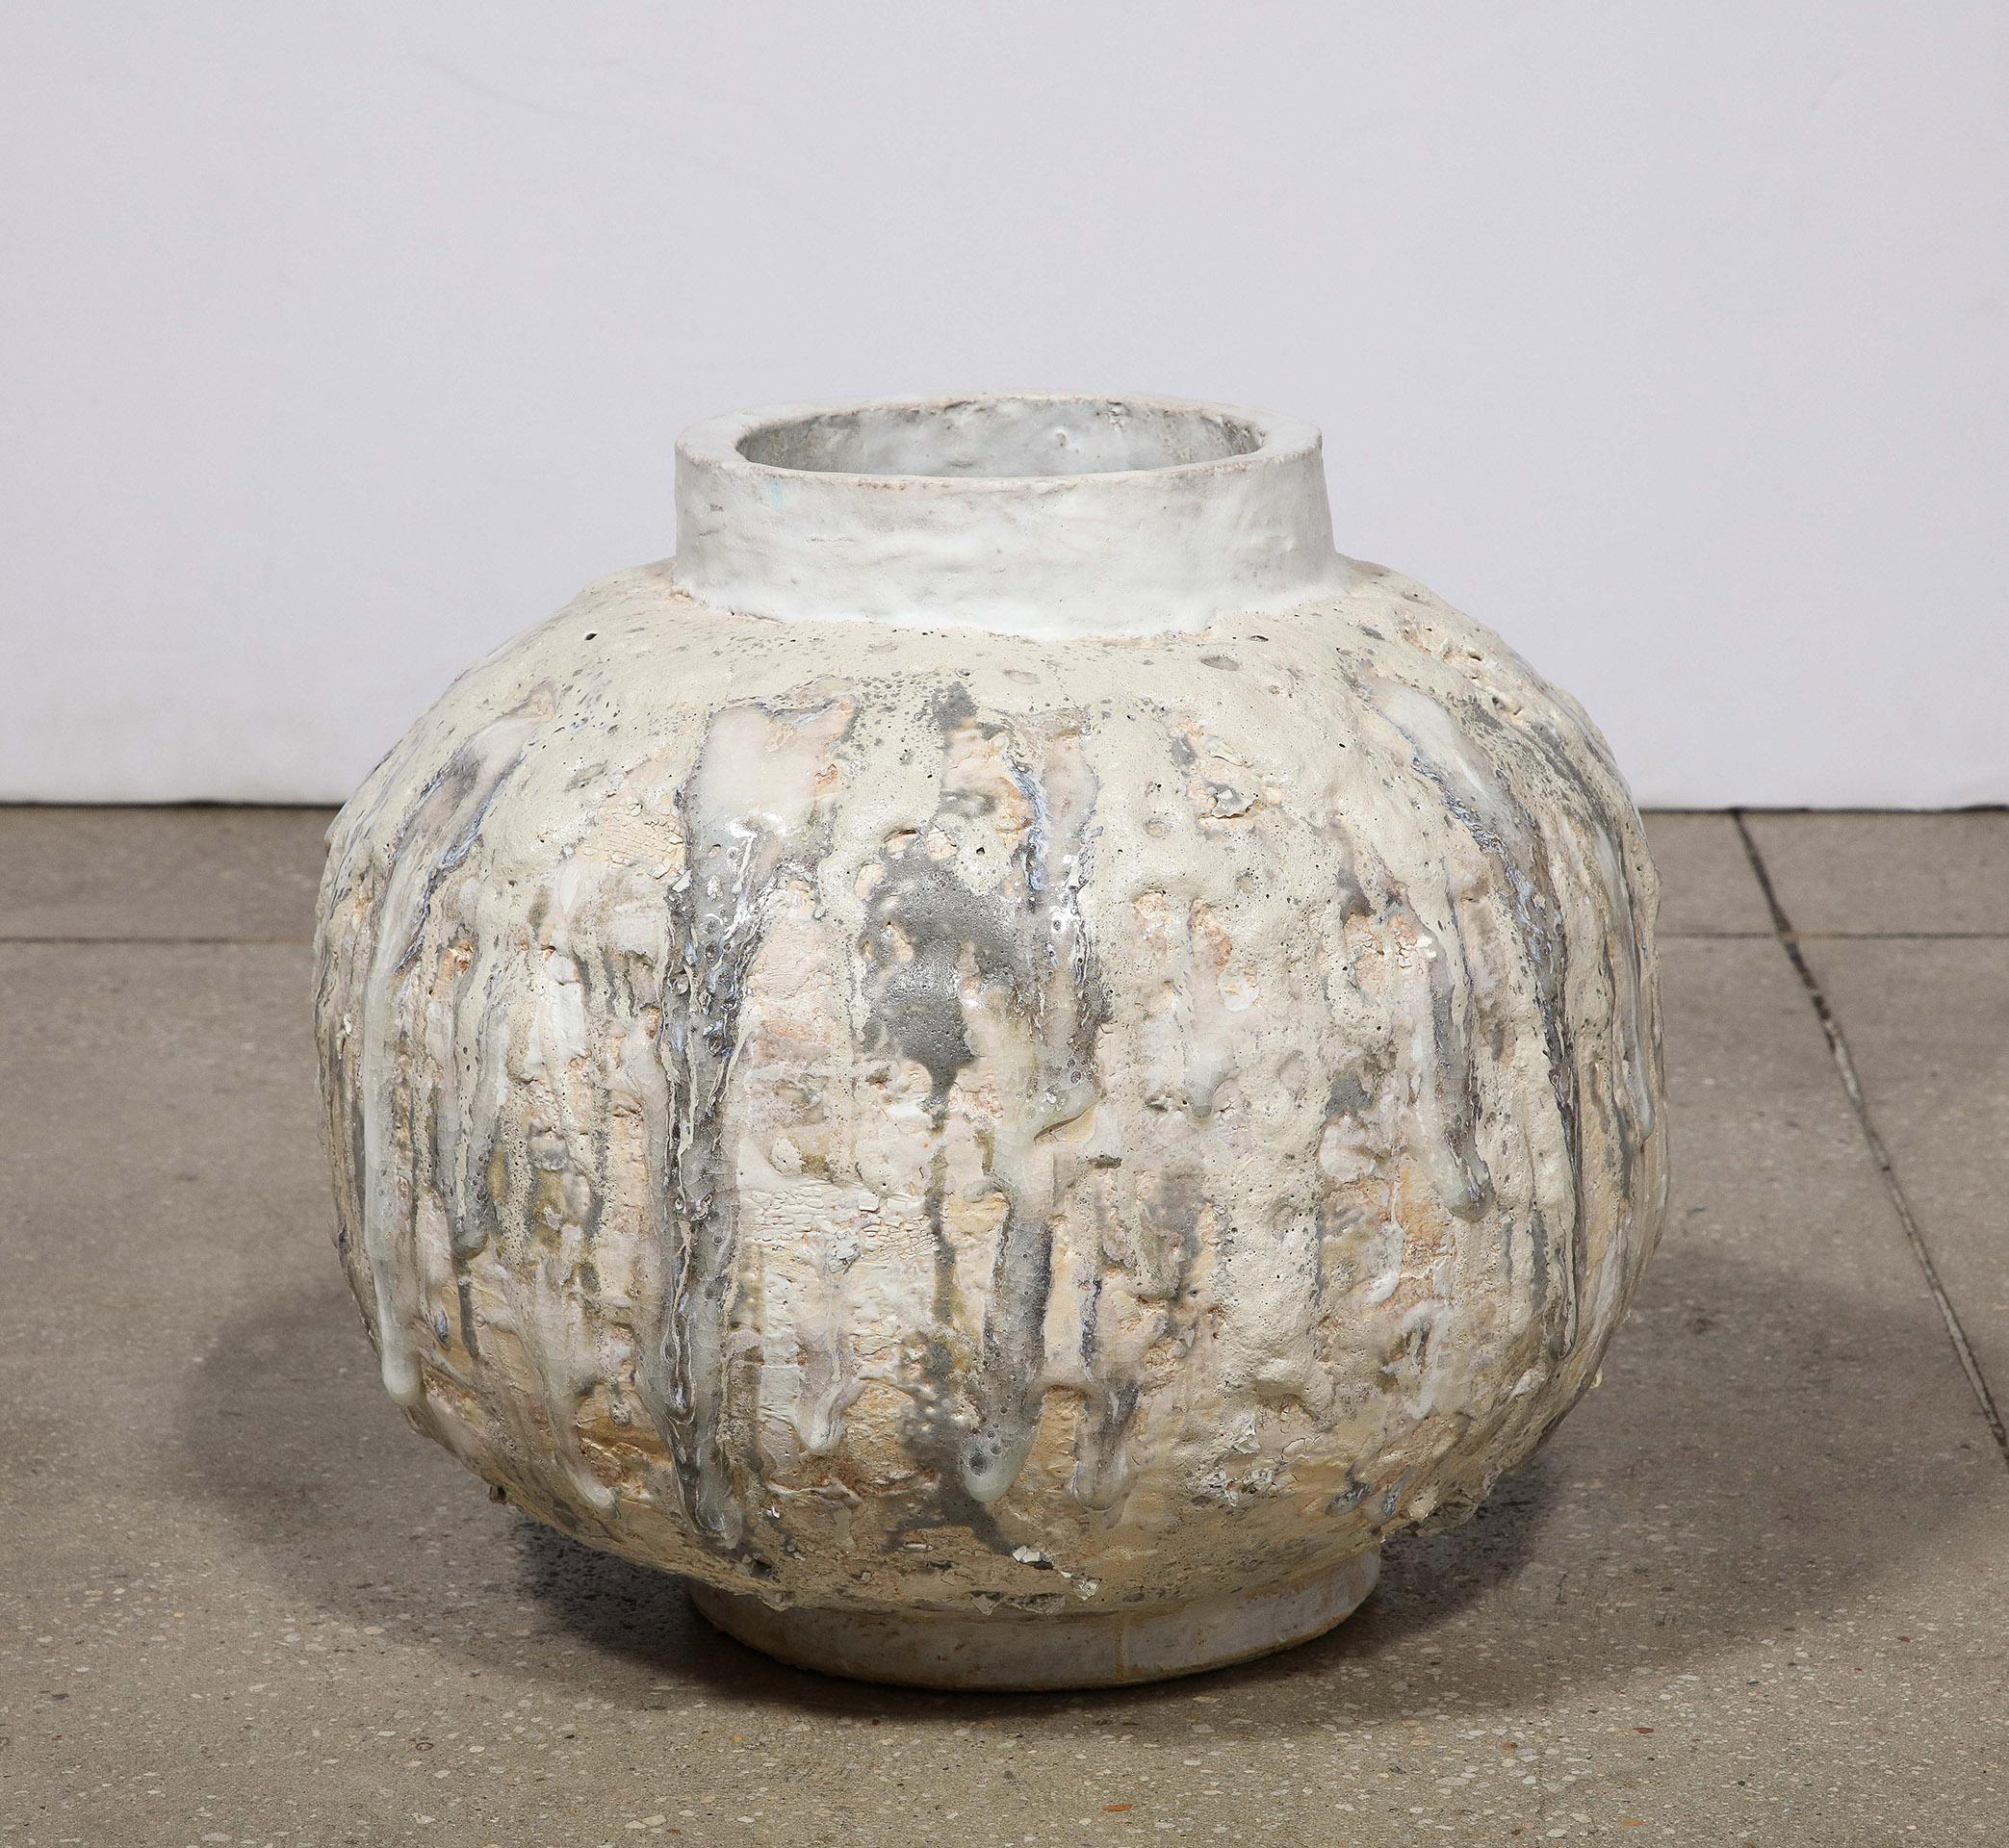 Contemporary White and Grey Ceramic Vessel by Shizue Imai